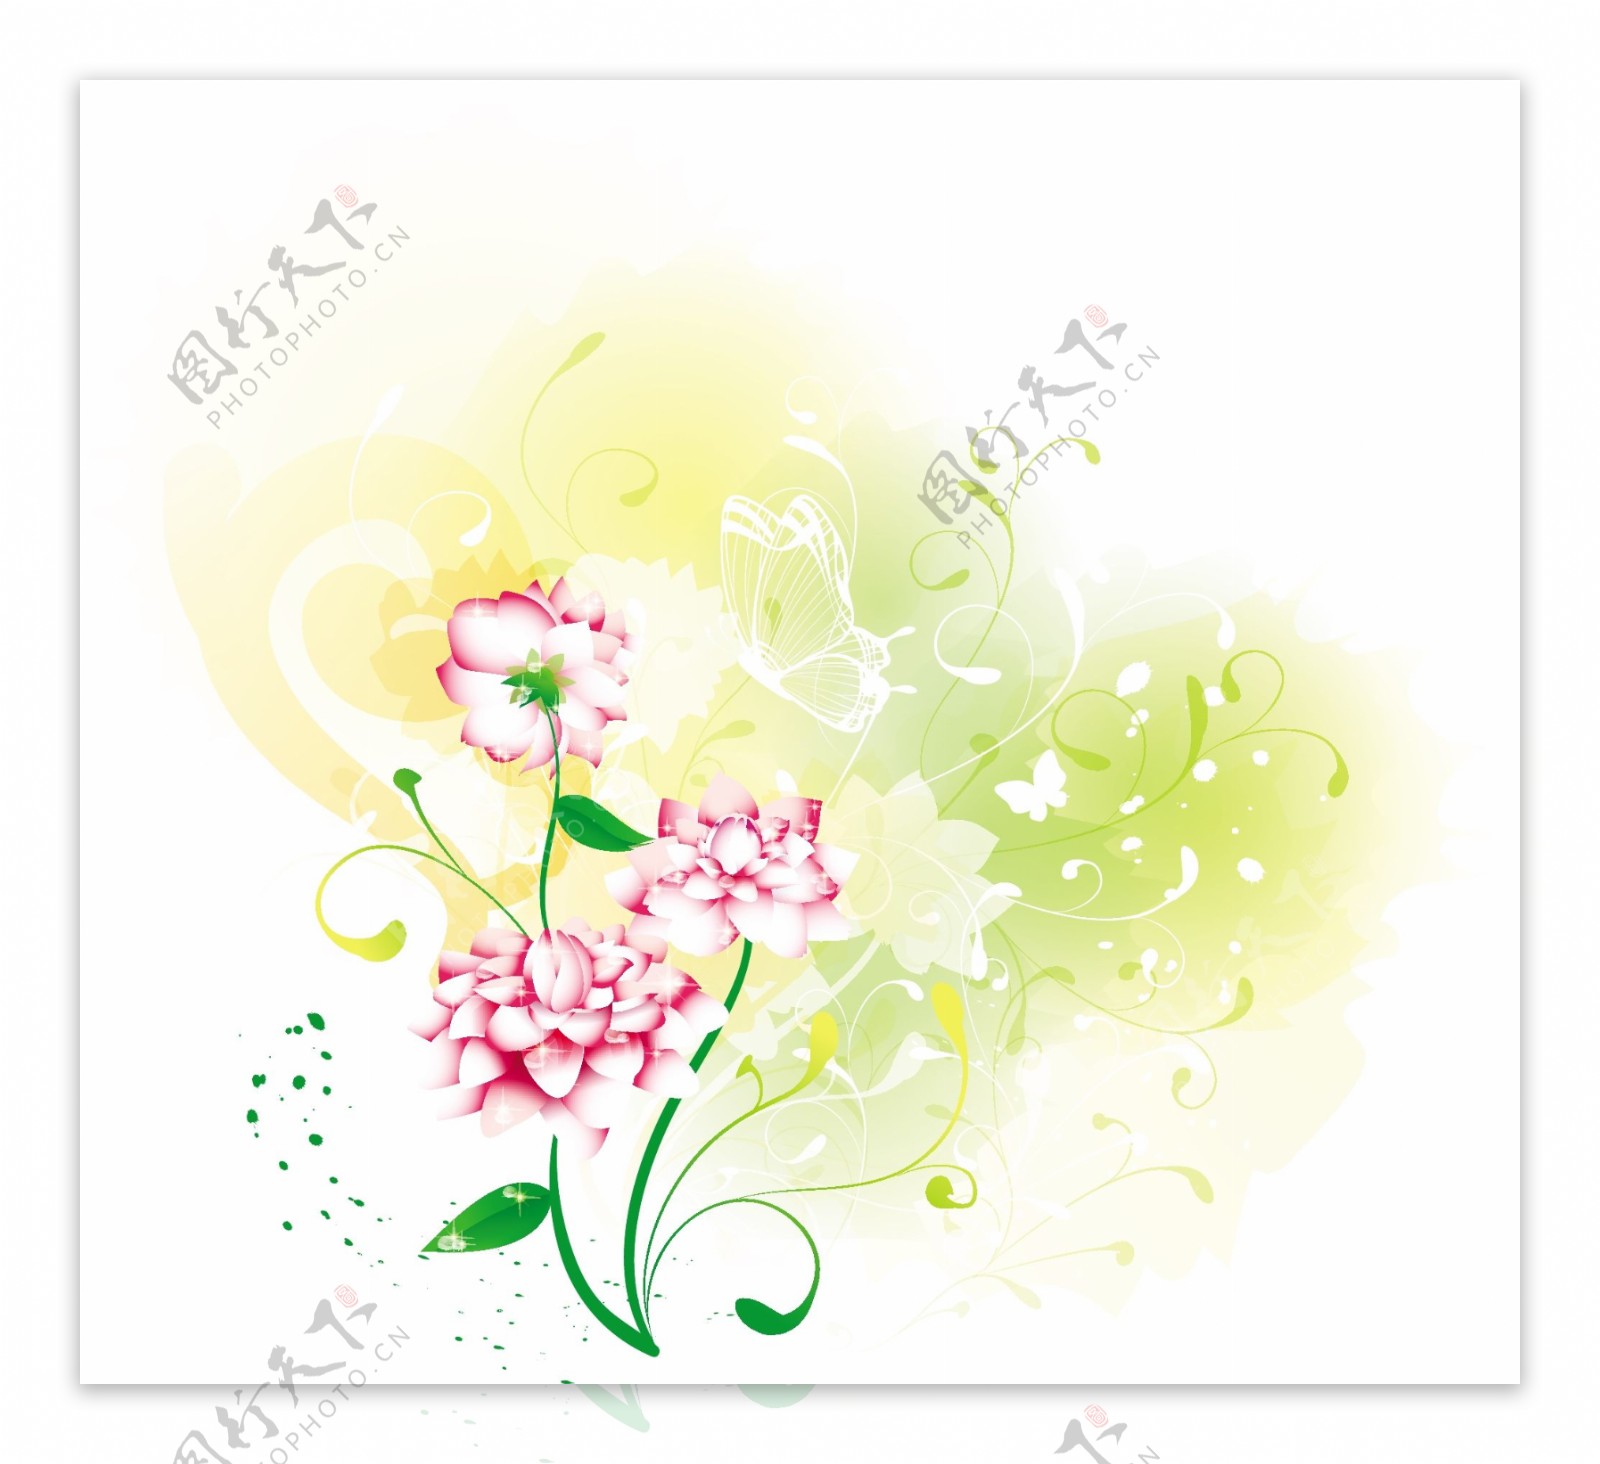 蝴蝶藤蔓和粉色花朵插画